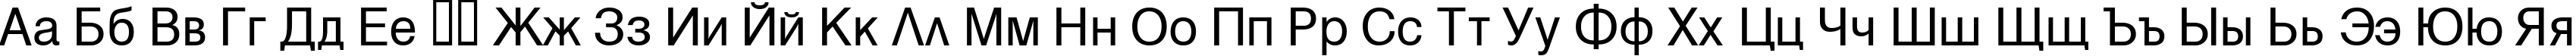 Пример написания русского алфавита шрифтом Hebar